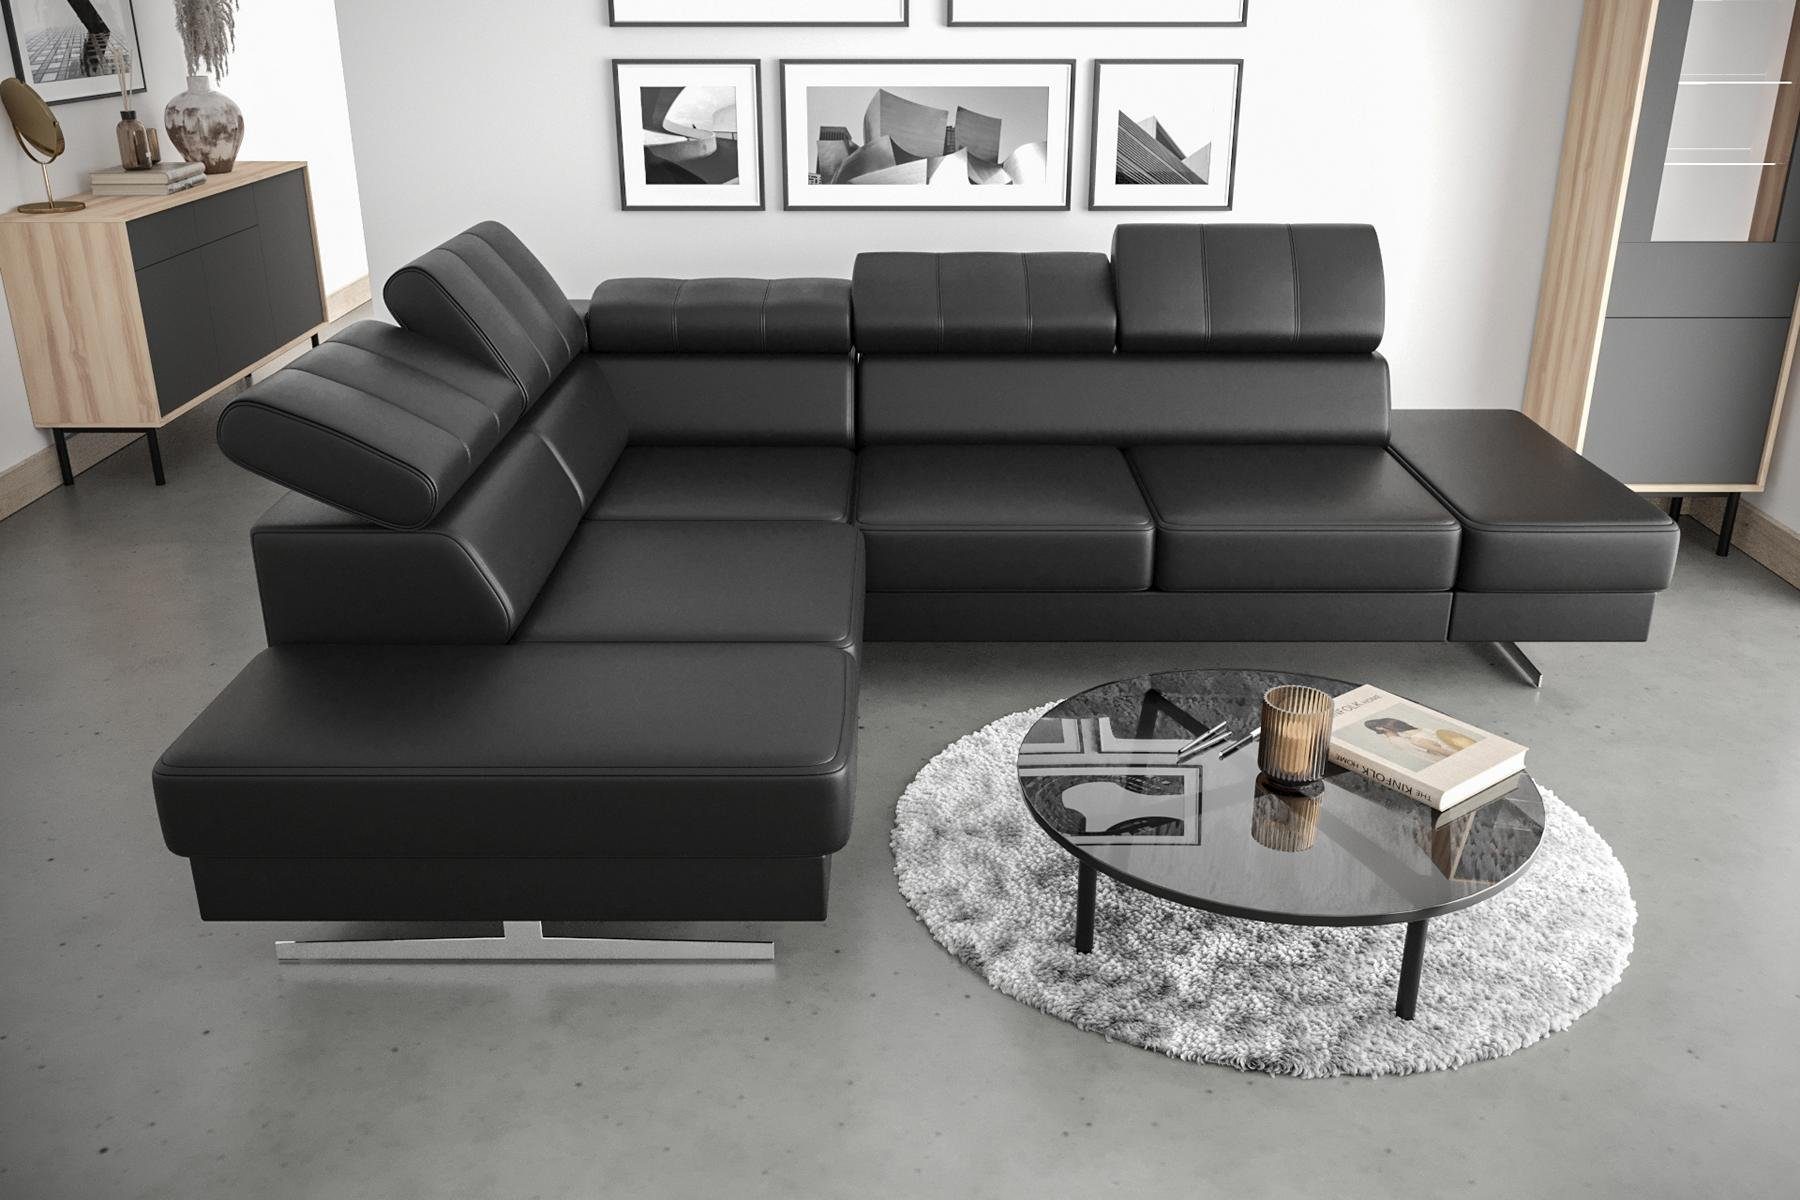 JVmoebel Ecksofa, Luxus Möbel Ecksofa L Form Couch Design Polsterung Textil Sofa Schwarz